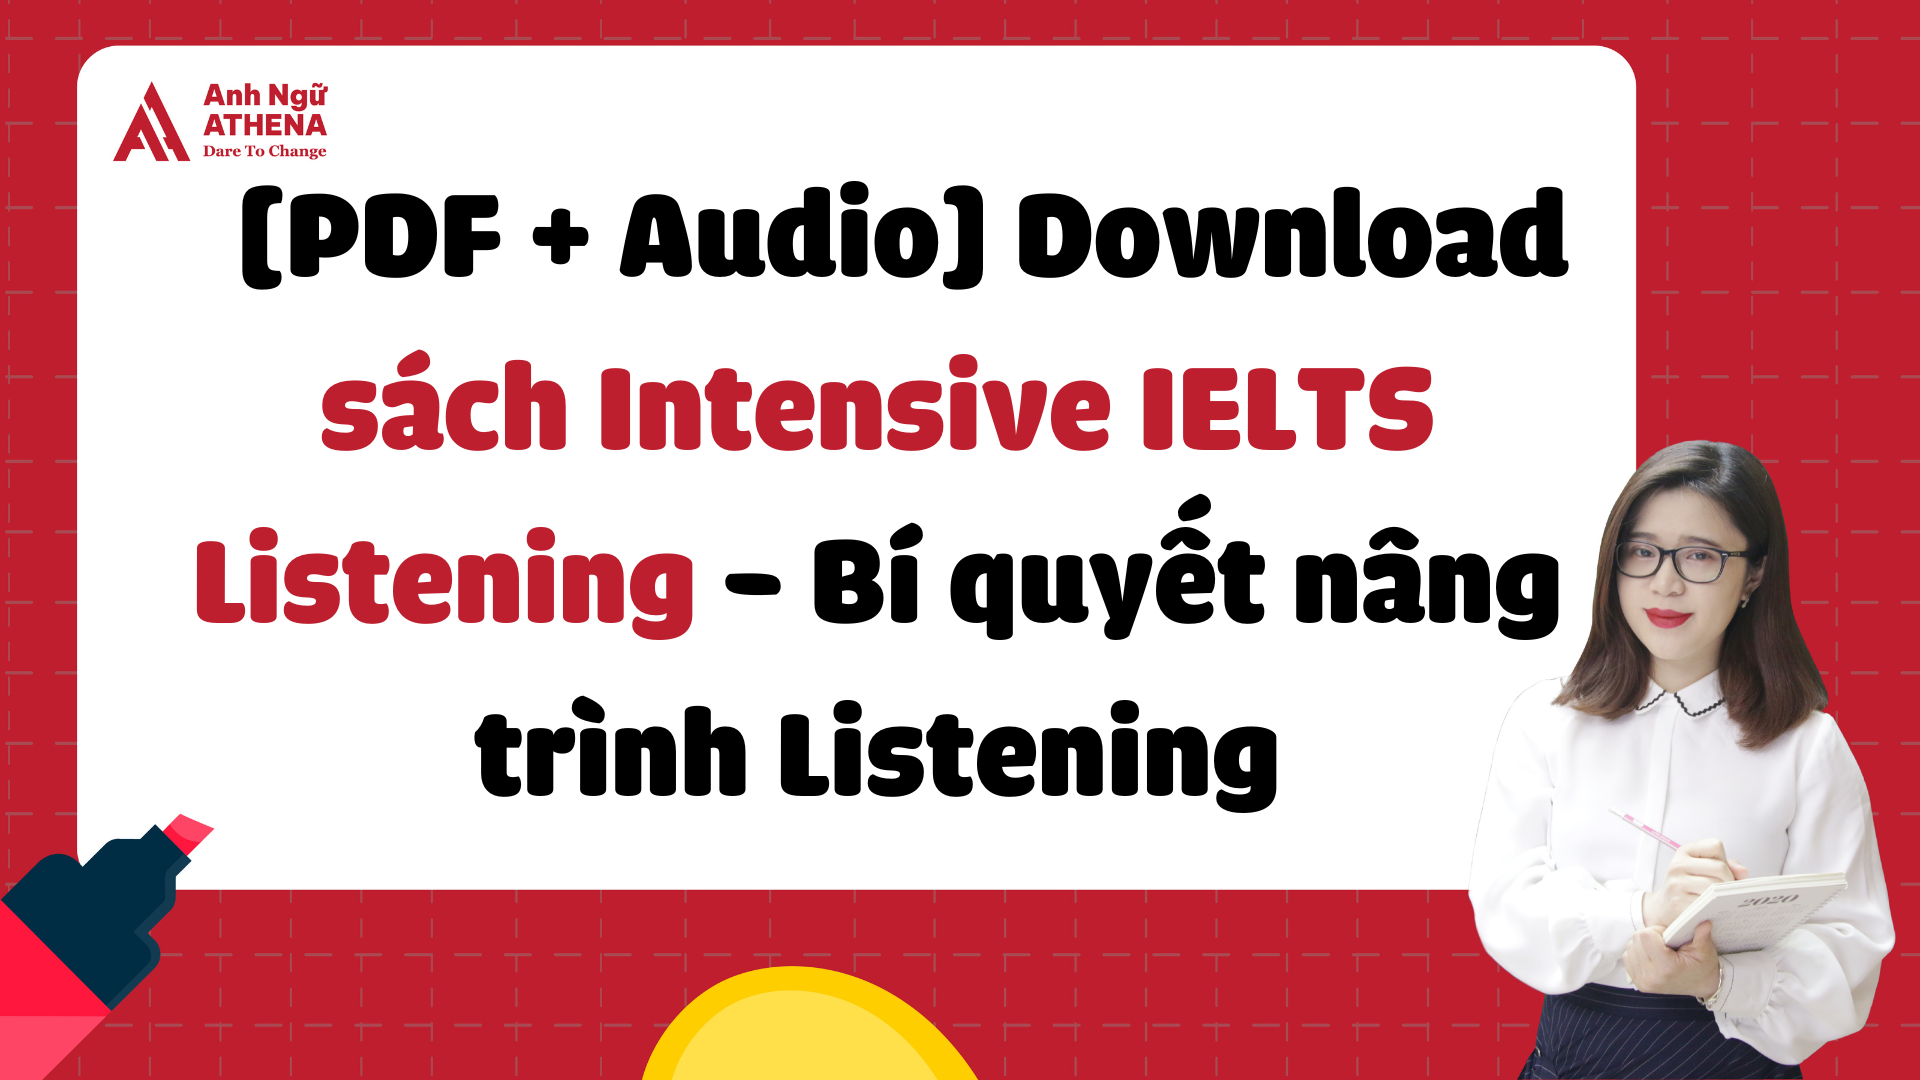 [PDF + Audio] Download sách Intensive IELTS Listening - Bí quyết nâng trình Listening